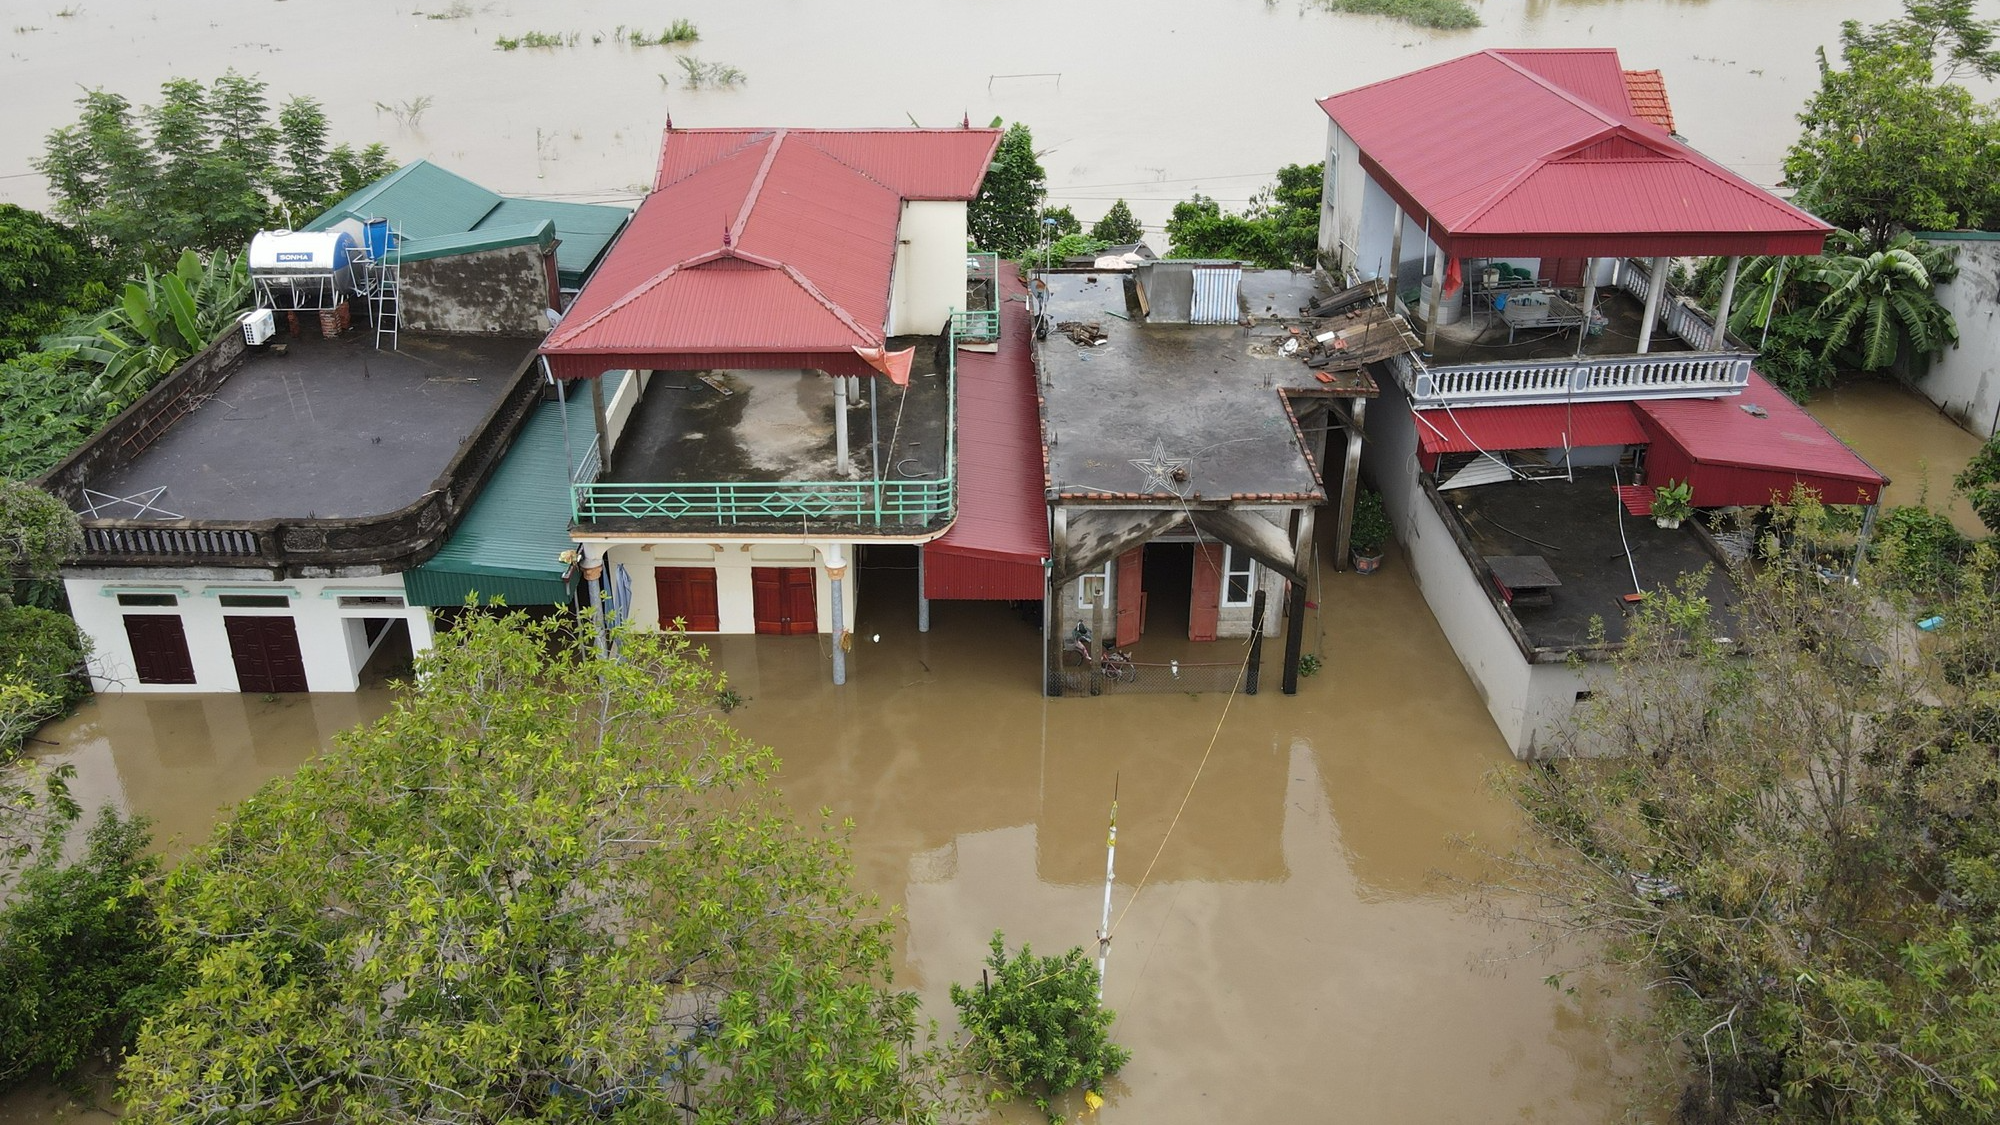 Nước sông Hoàng Long dâng cao gây ngập hàng trăm nhà dân - Ảnh 2.